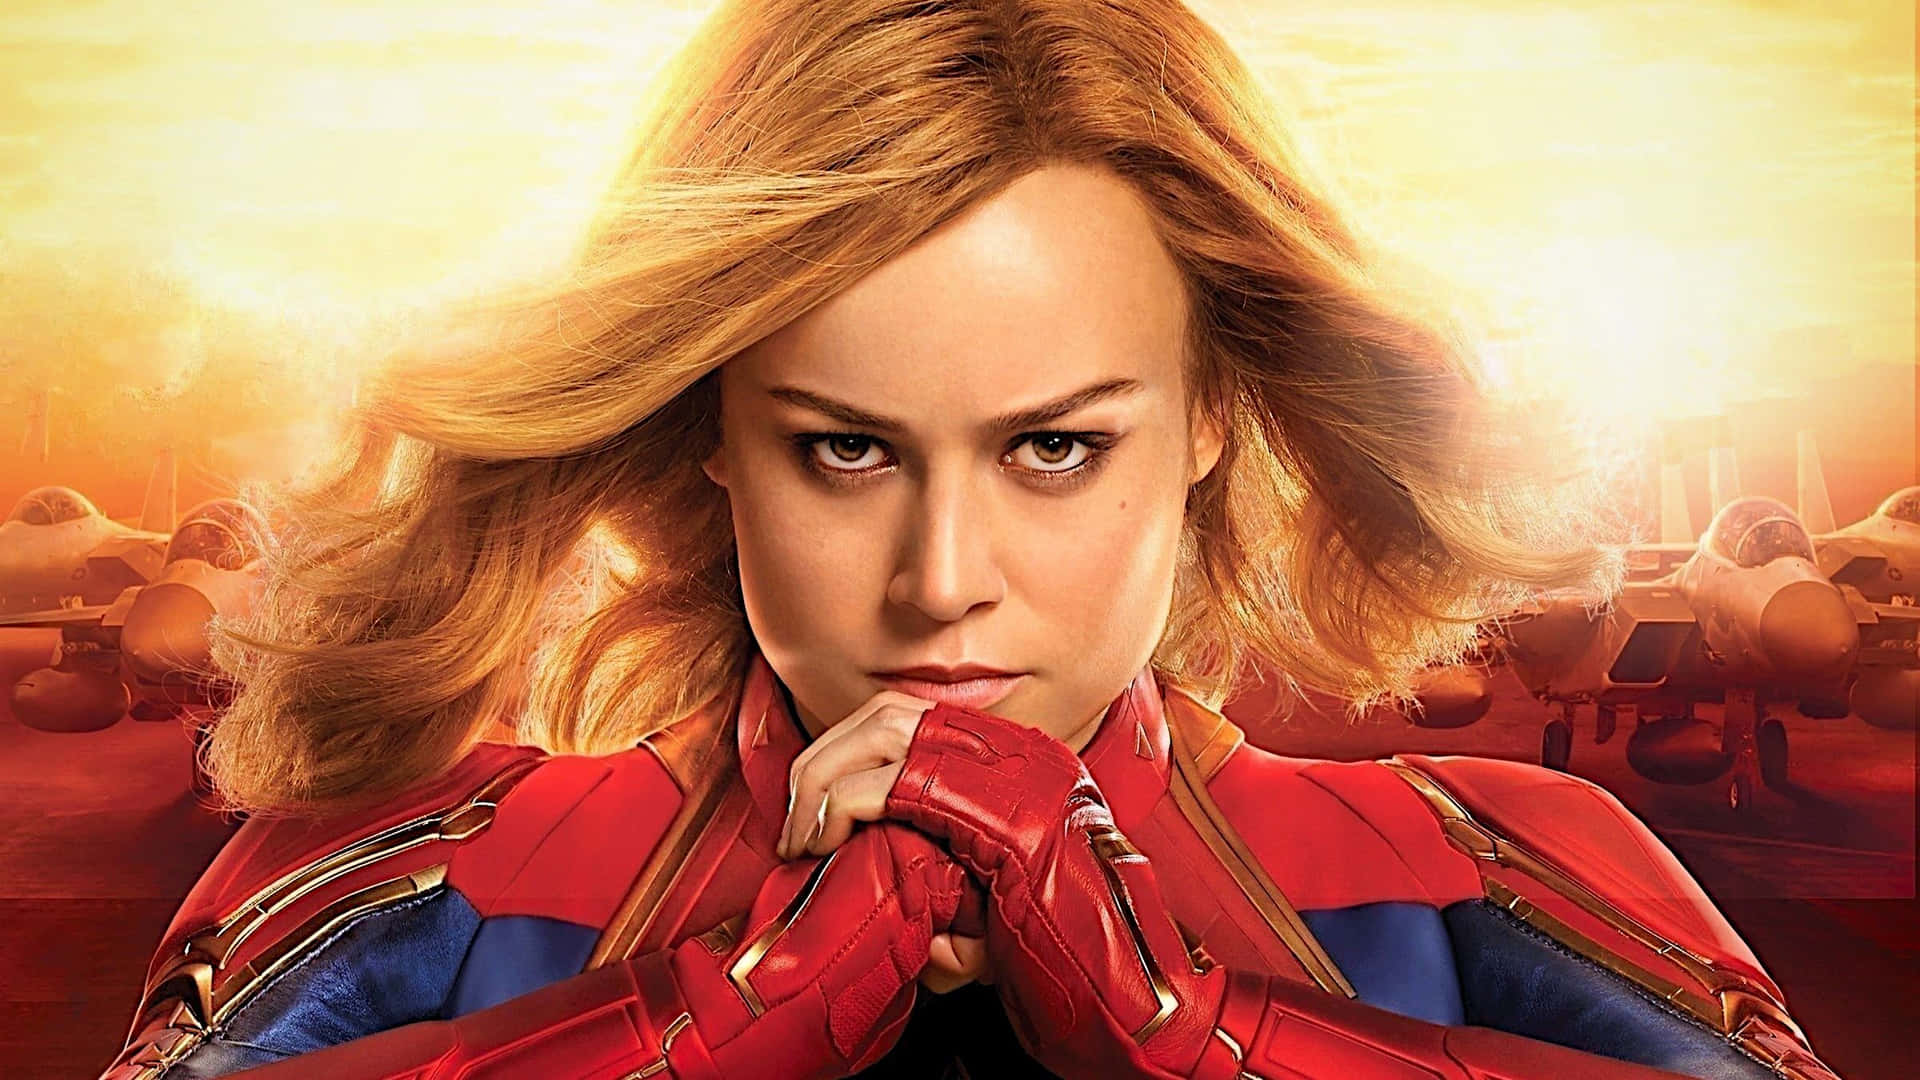 Brie Larson as Captain Marvel, bravely emerging in a new world. Wallpaper